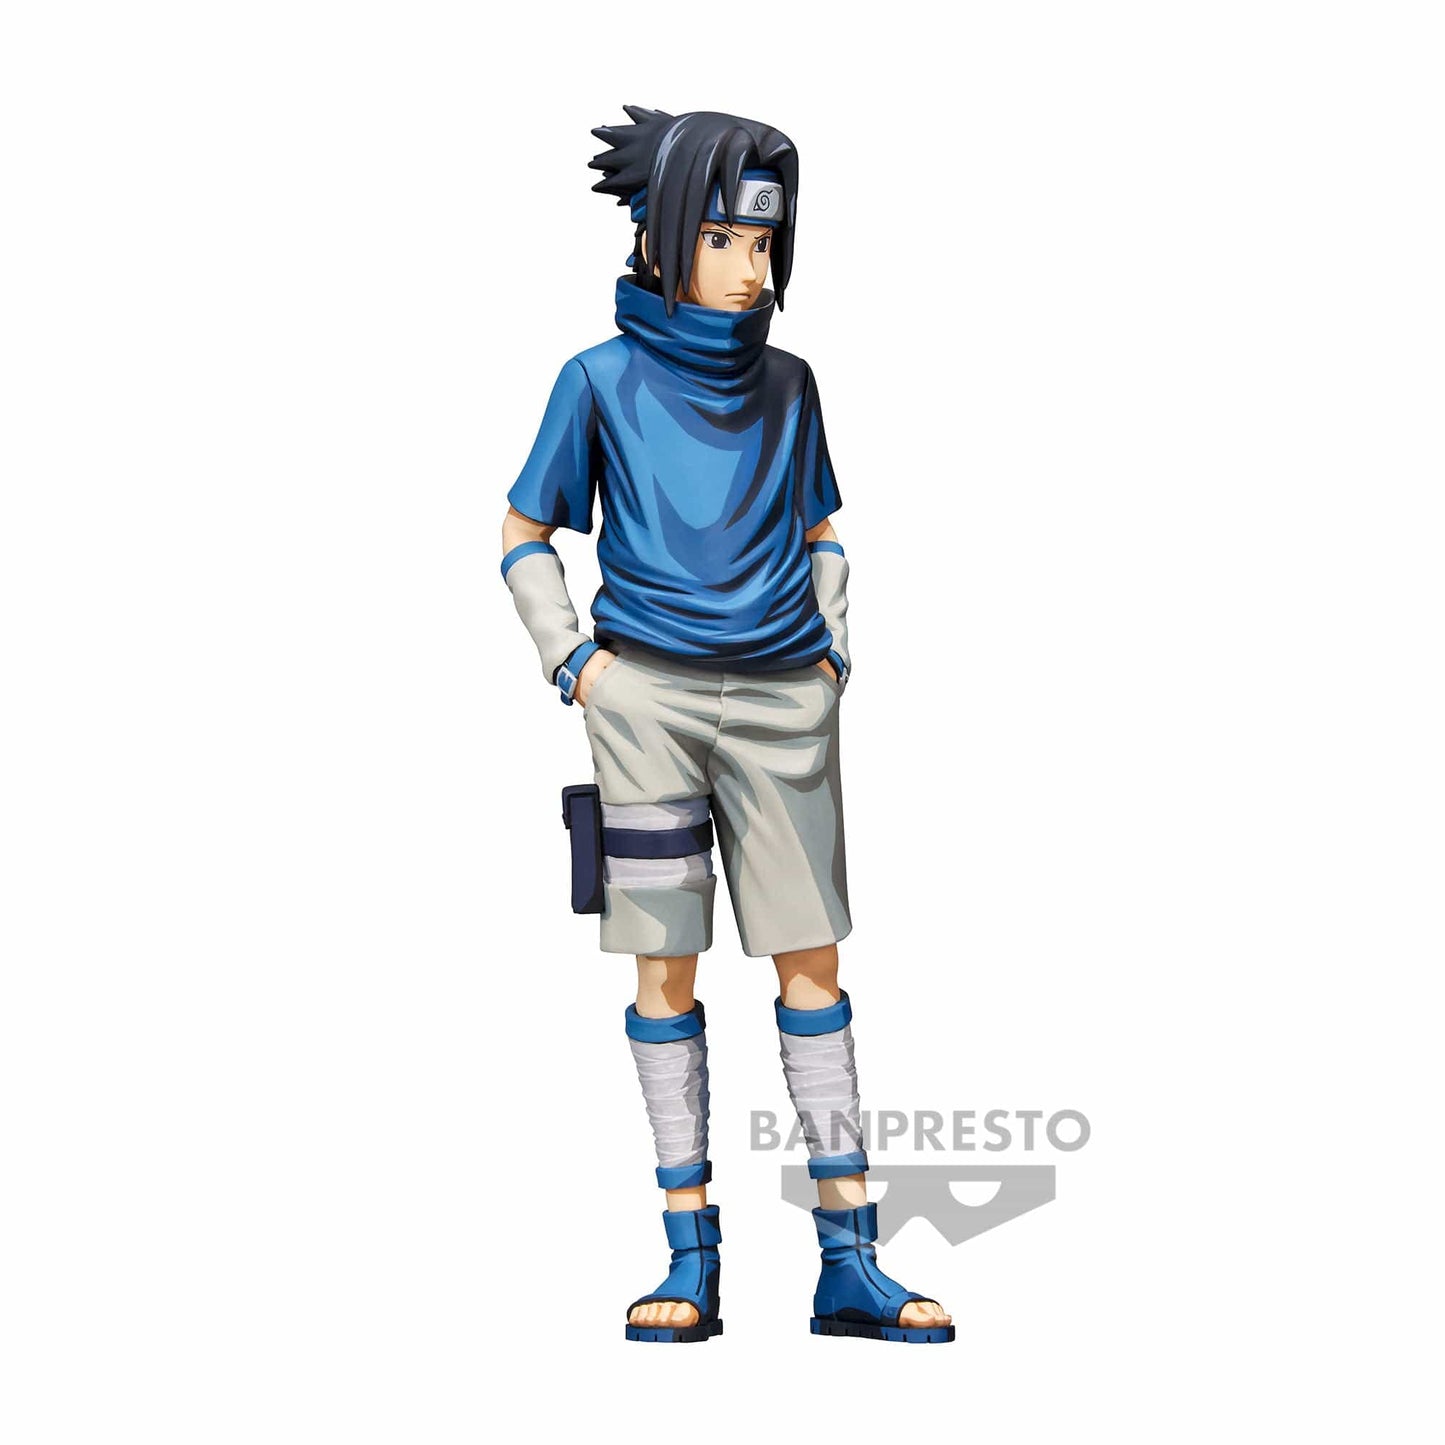 PO-BANPRESTO: Naruto: Shippuden Grandista Sasuke Uchiha #2 (Manga Dimensions)